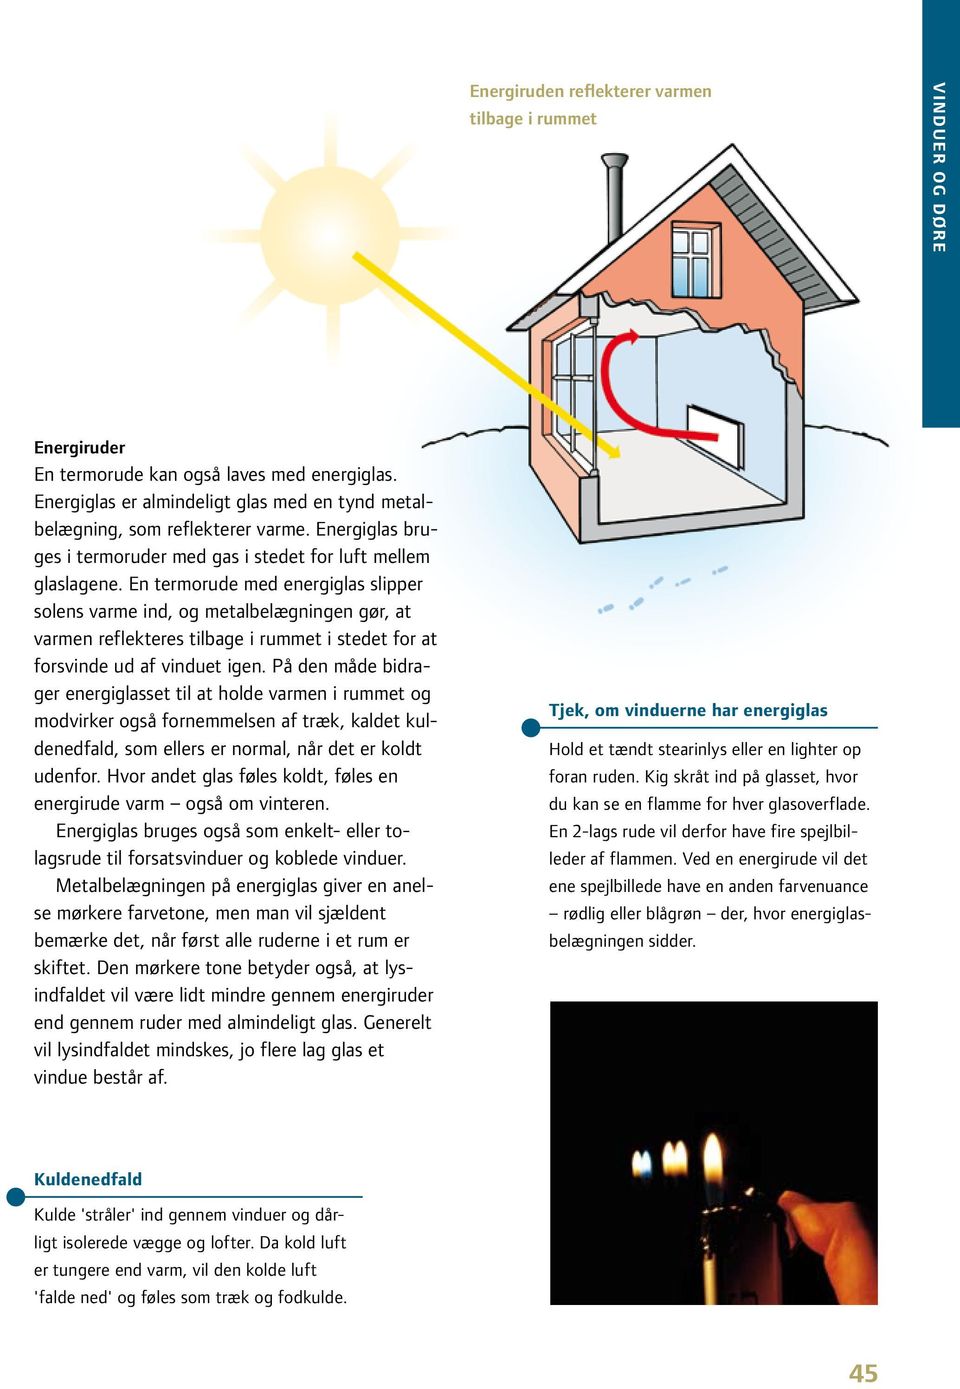 En termorude med energiglas slipper solens varme ind, og metalbelægningen gør, at varmen reflekteres tilbage i rummet i stedet for at forsvinde ud af vinduet igen.